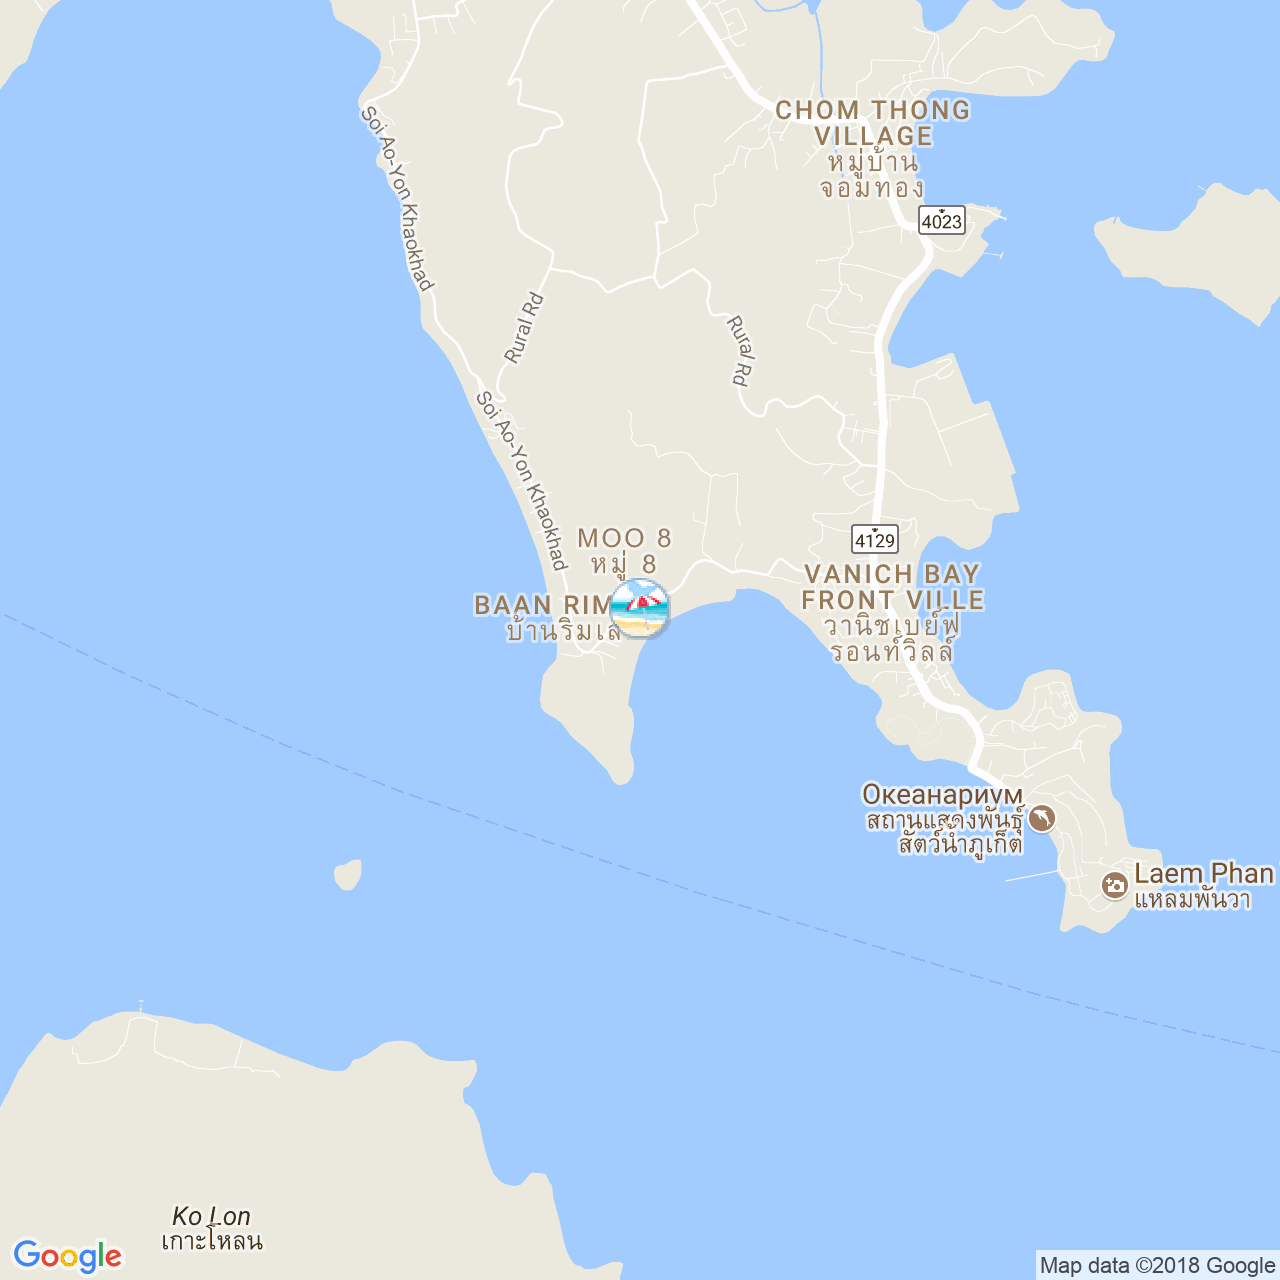 Пляж Ао Йон на карте Пхукета